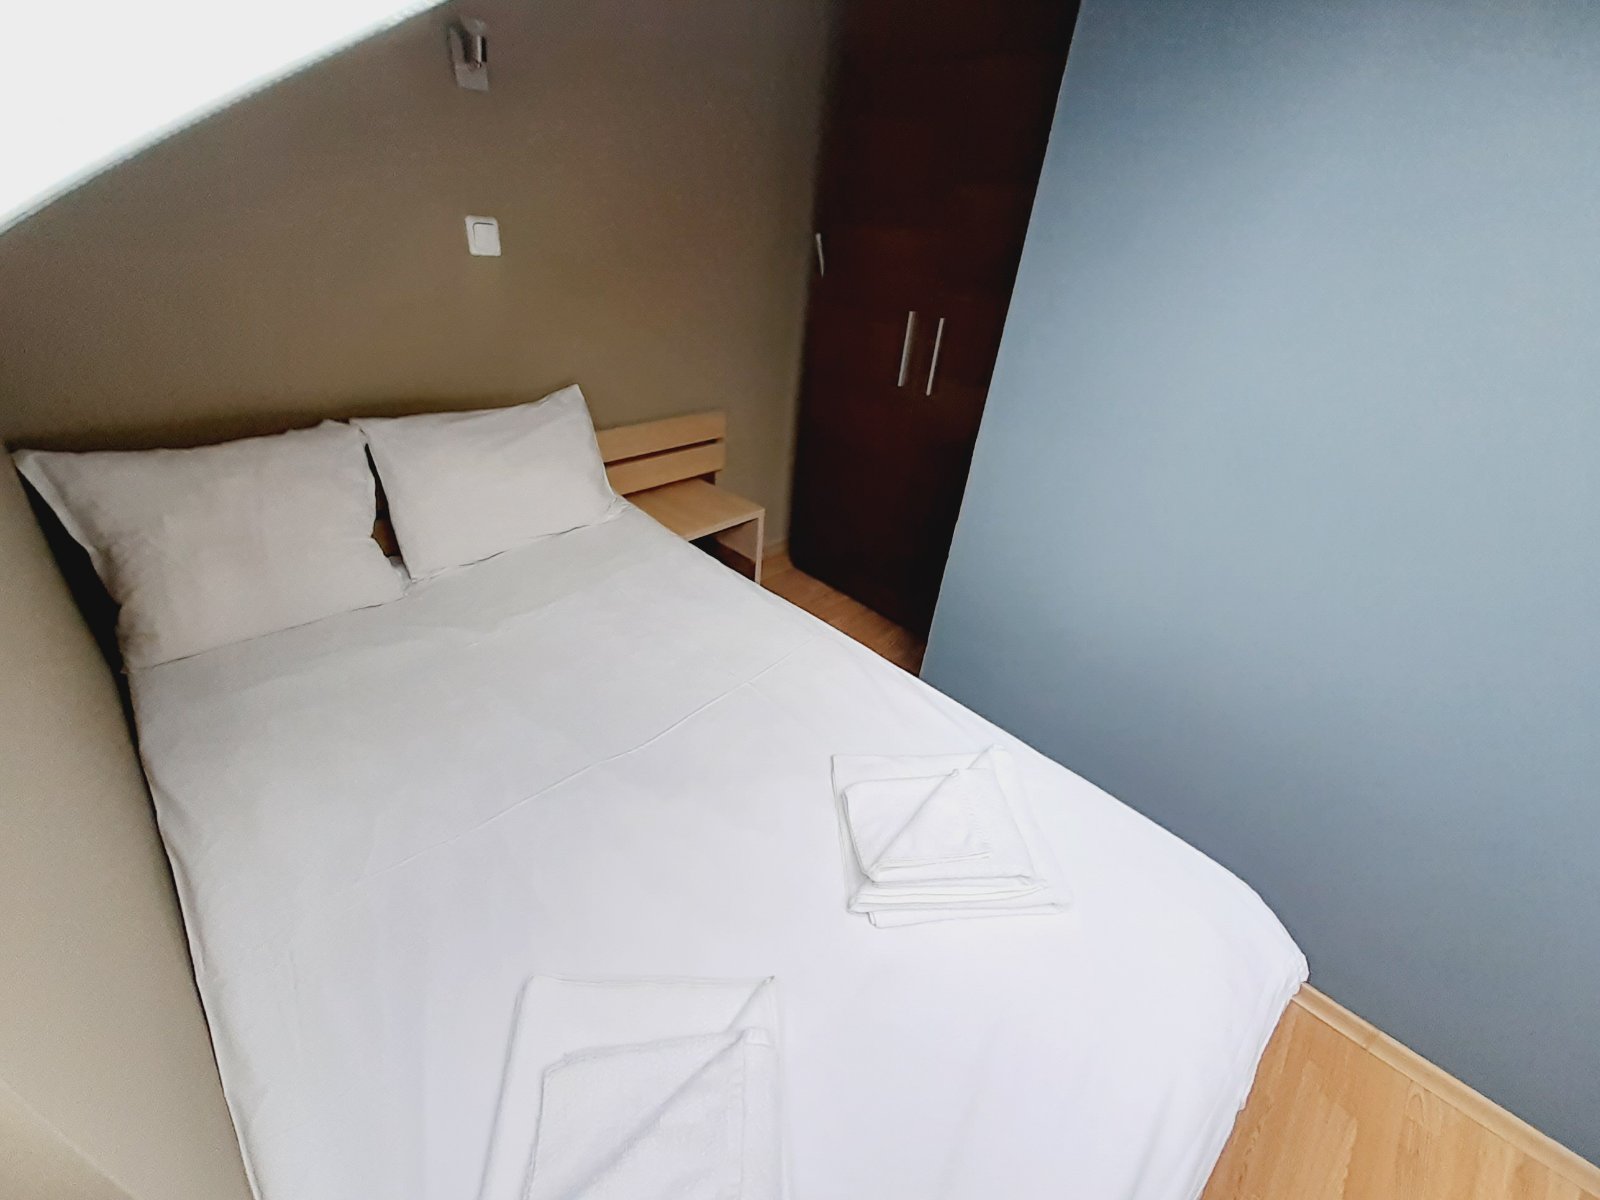 Ски зона, Банско: Маломерен двустаен апартамент с ниска такса поддръжка